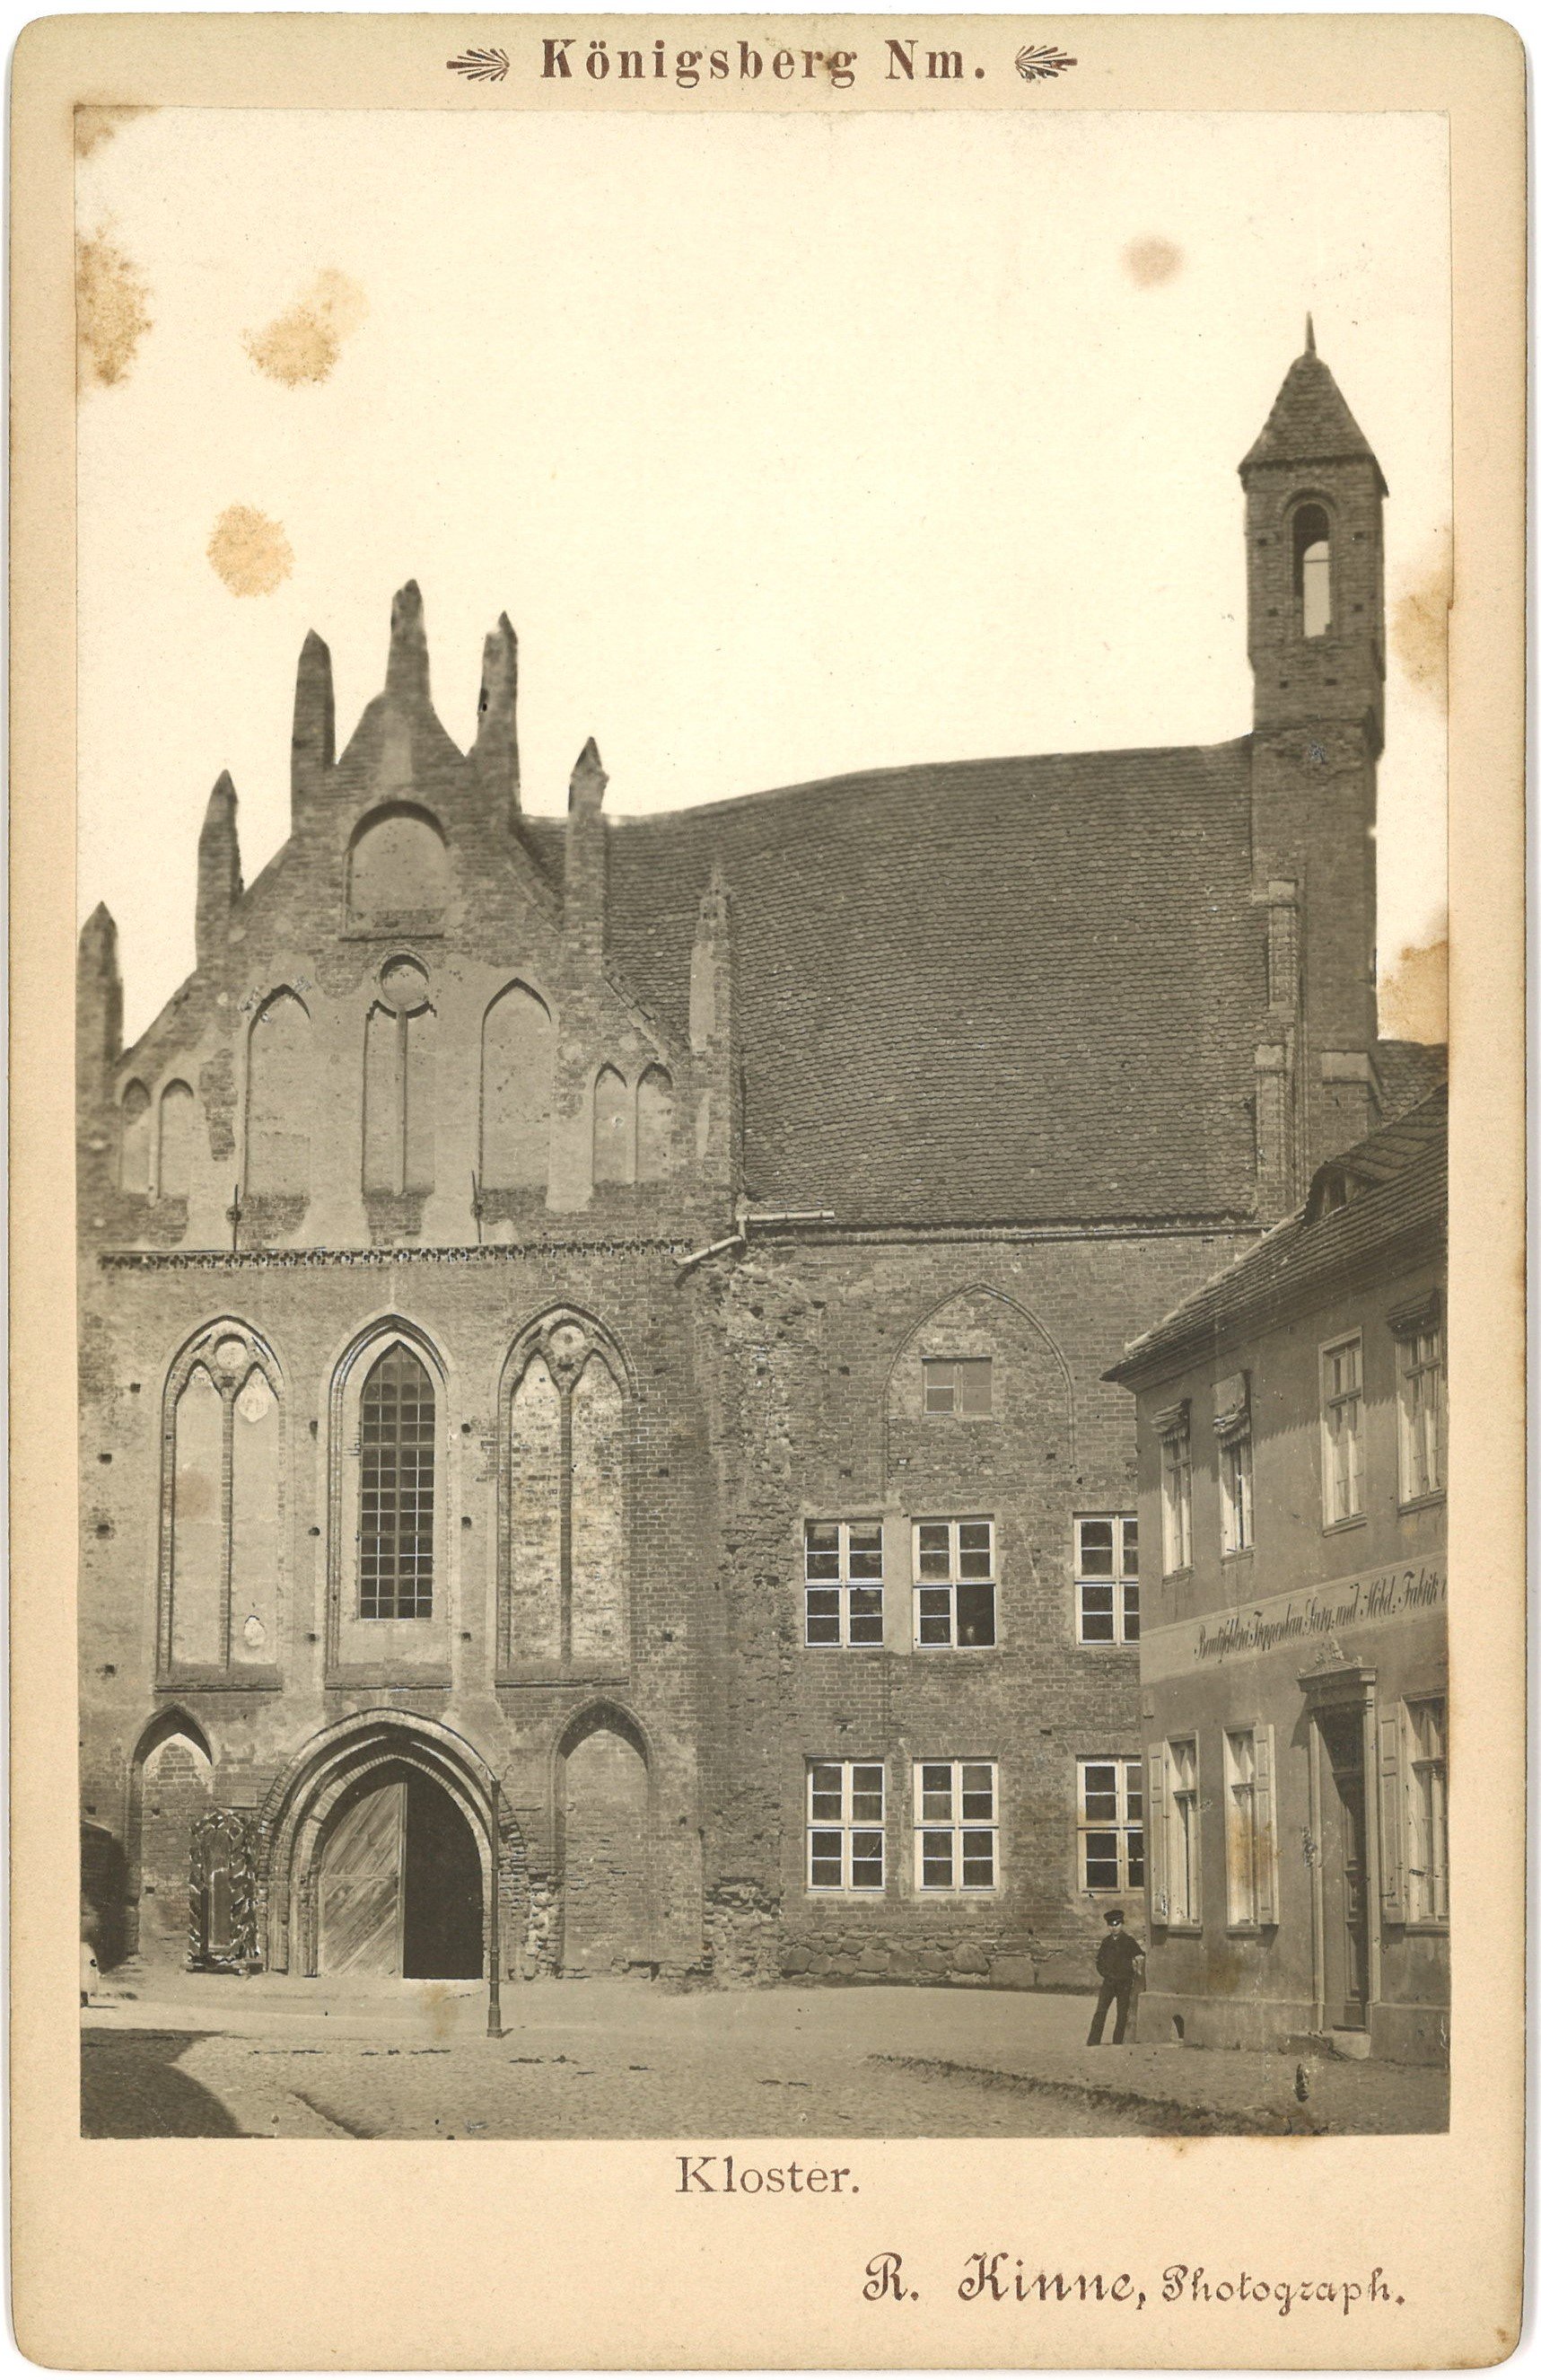 Königsberg/Neumark [Chojna]: Kloster von Westen (Landesgeschichtliche Vereinigung für die Mark Brandenburg e.V., Archiv CC BY)